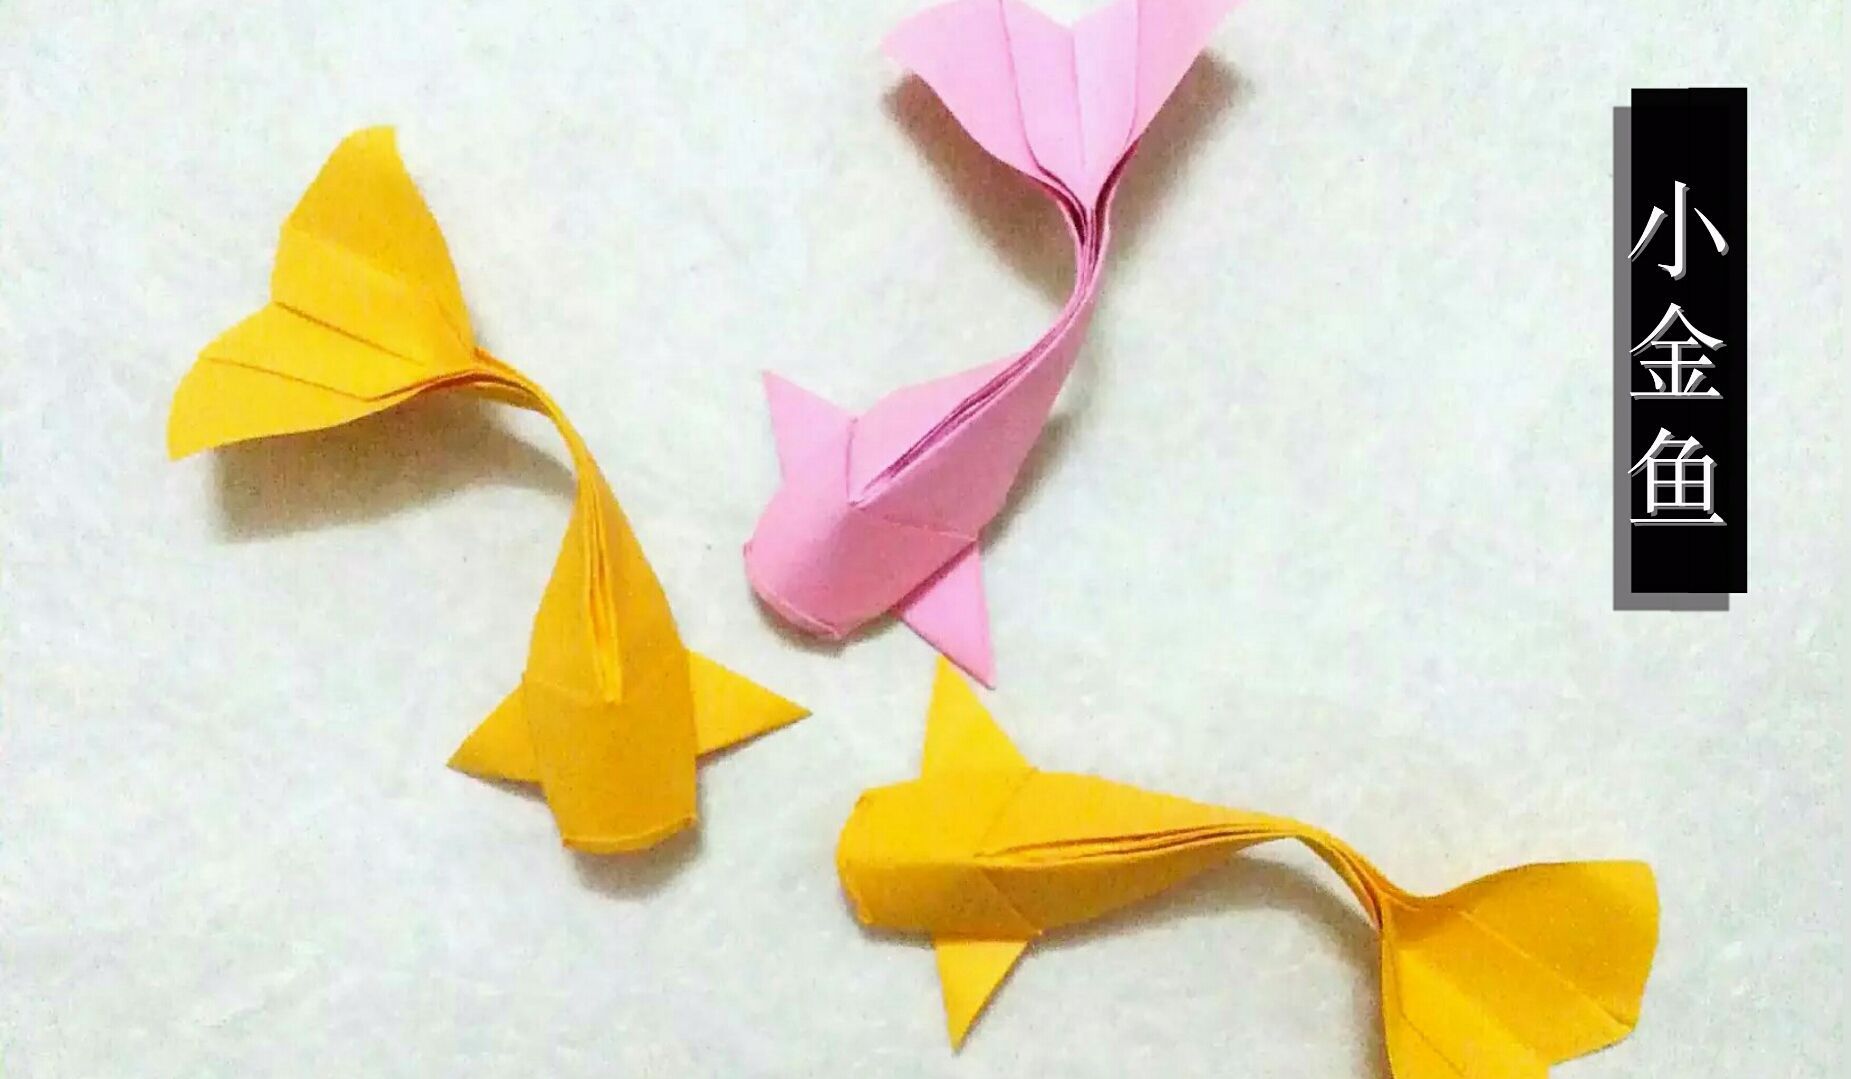 简单折纸小金鱼